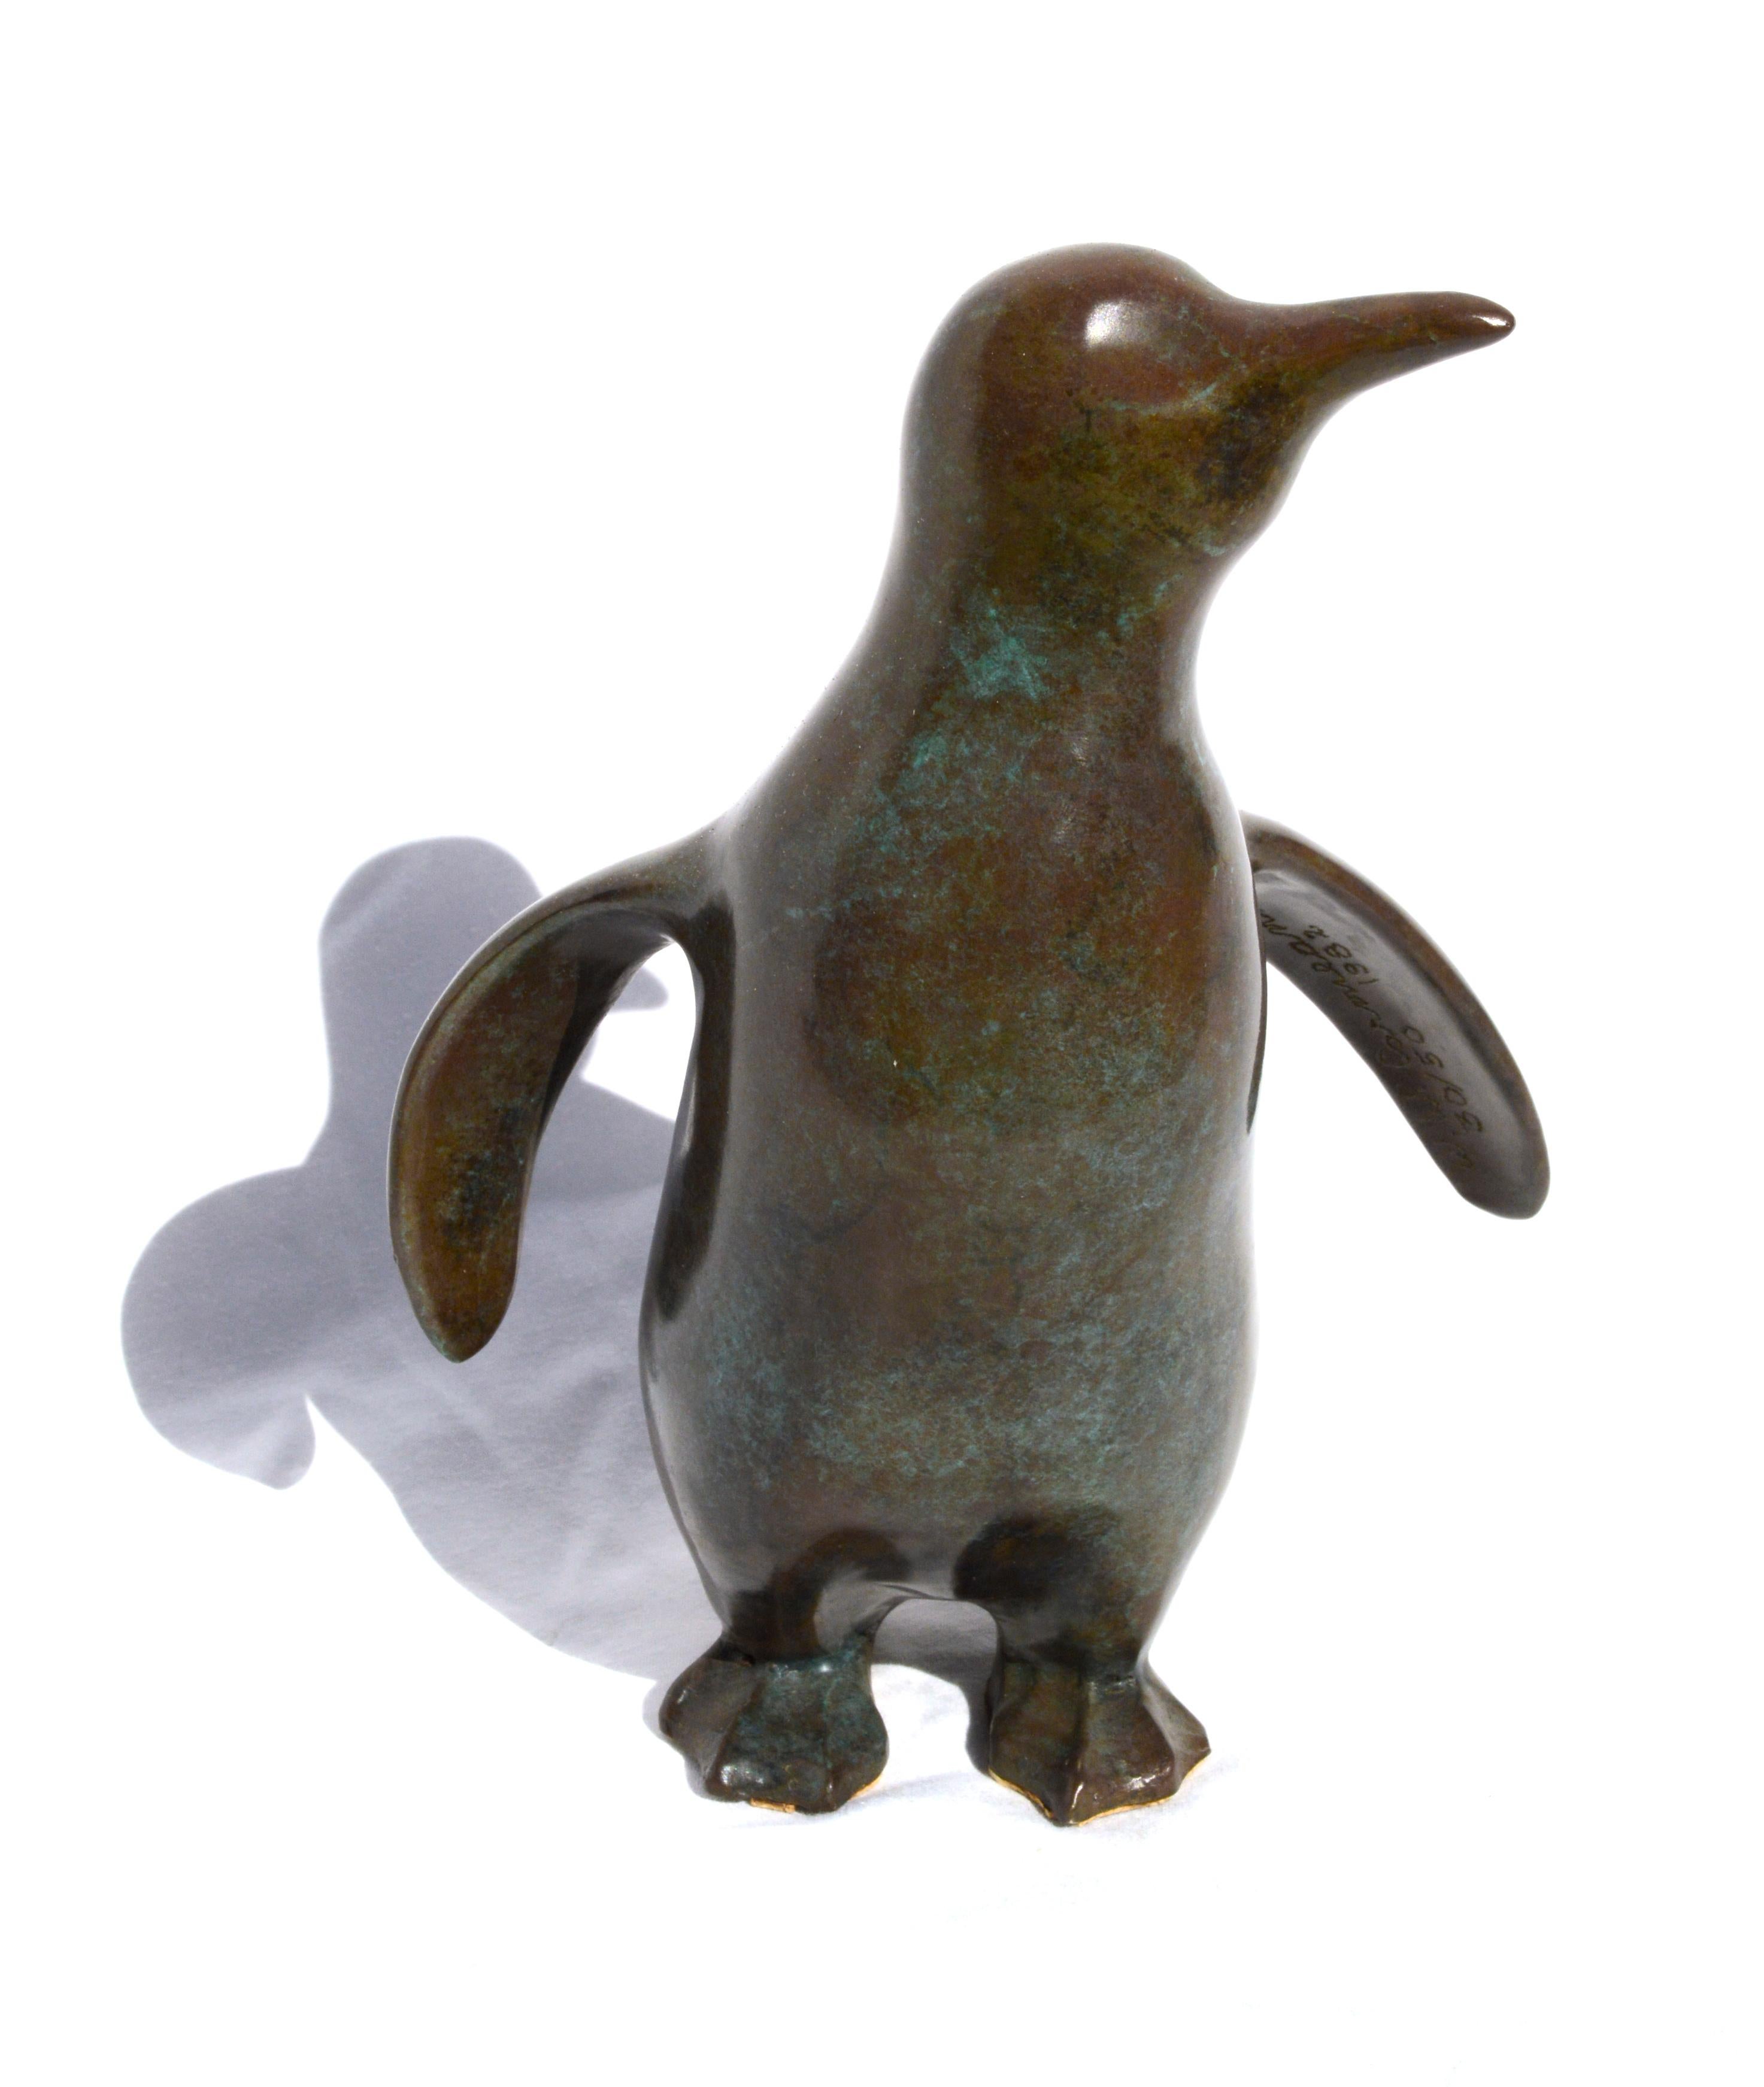 Winston Walter Carmean Figurative Sculpture - Penguin Sculpture #14 of 50 by Winston Carmean for the Cousteau Foundation Rare